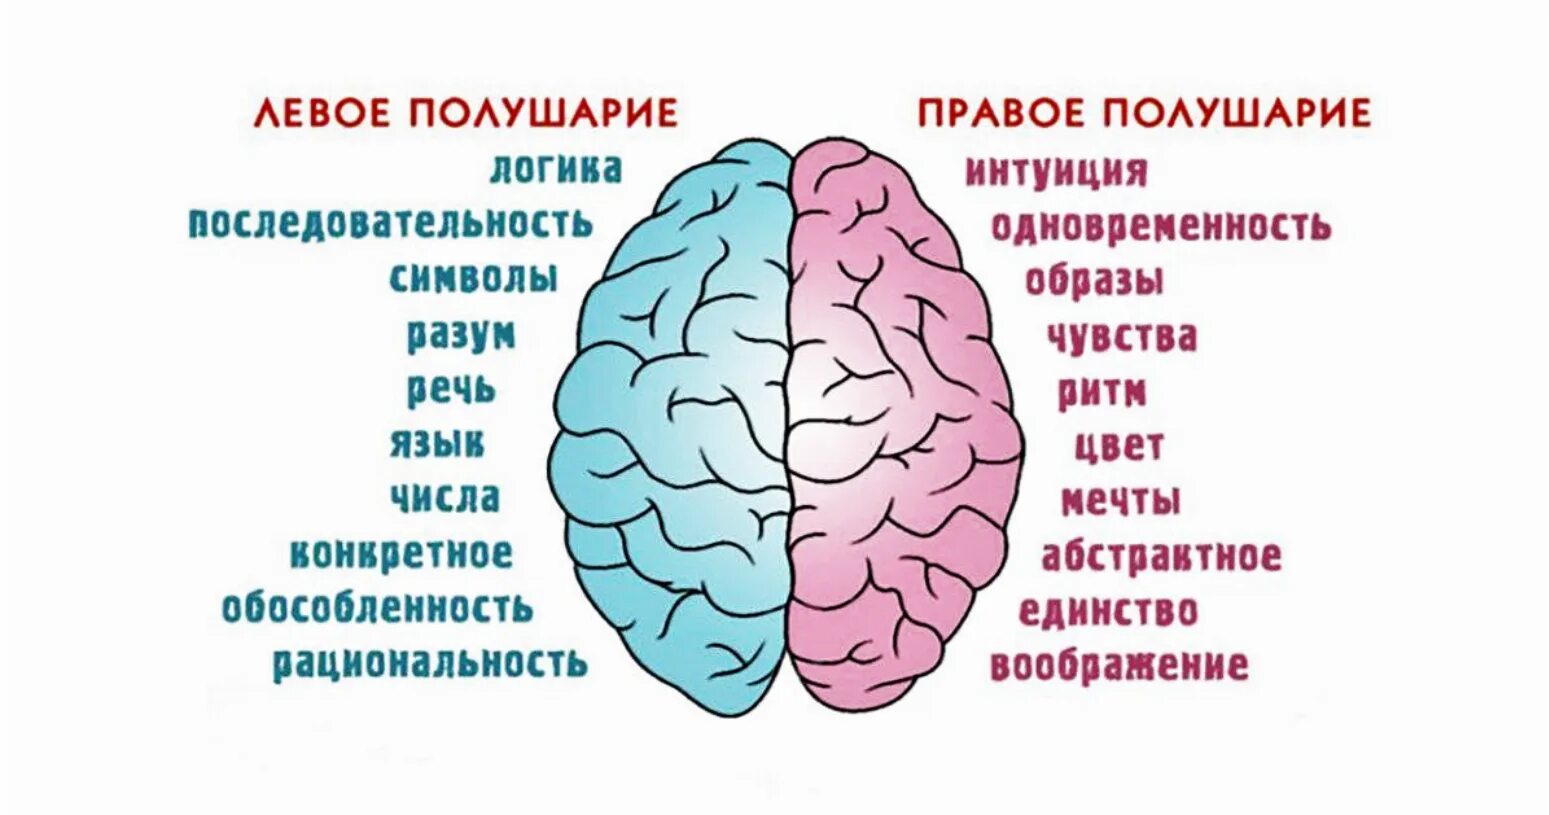 Человек который и правой и левой. Полушария мозга девое т правое. За что отвечает правое полушарие. За что отвечают полушария головного мозга человека левое и правое. За какие процессы головного мозга отвечает правое полушарие.